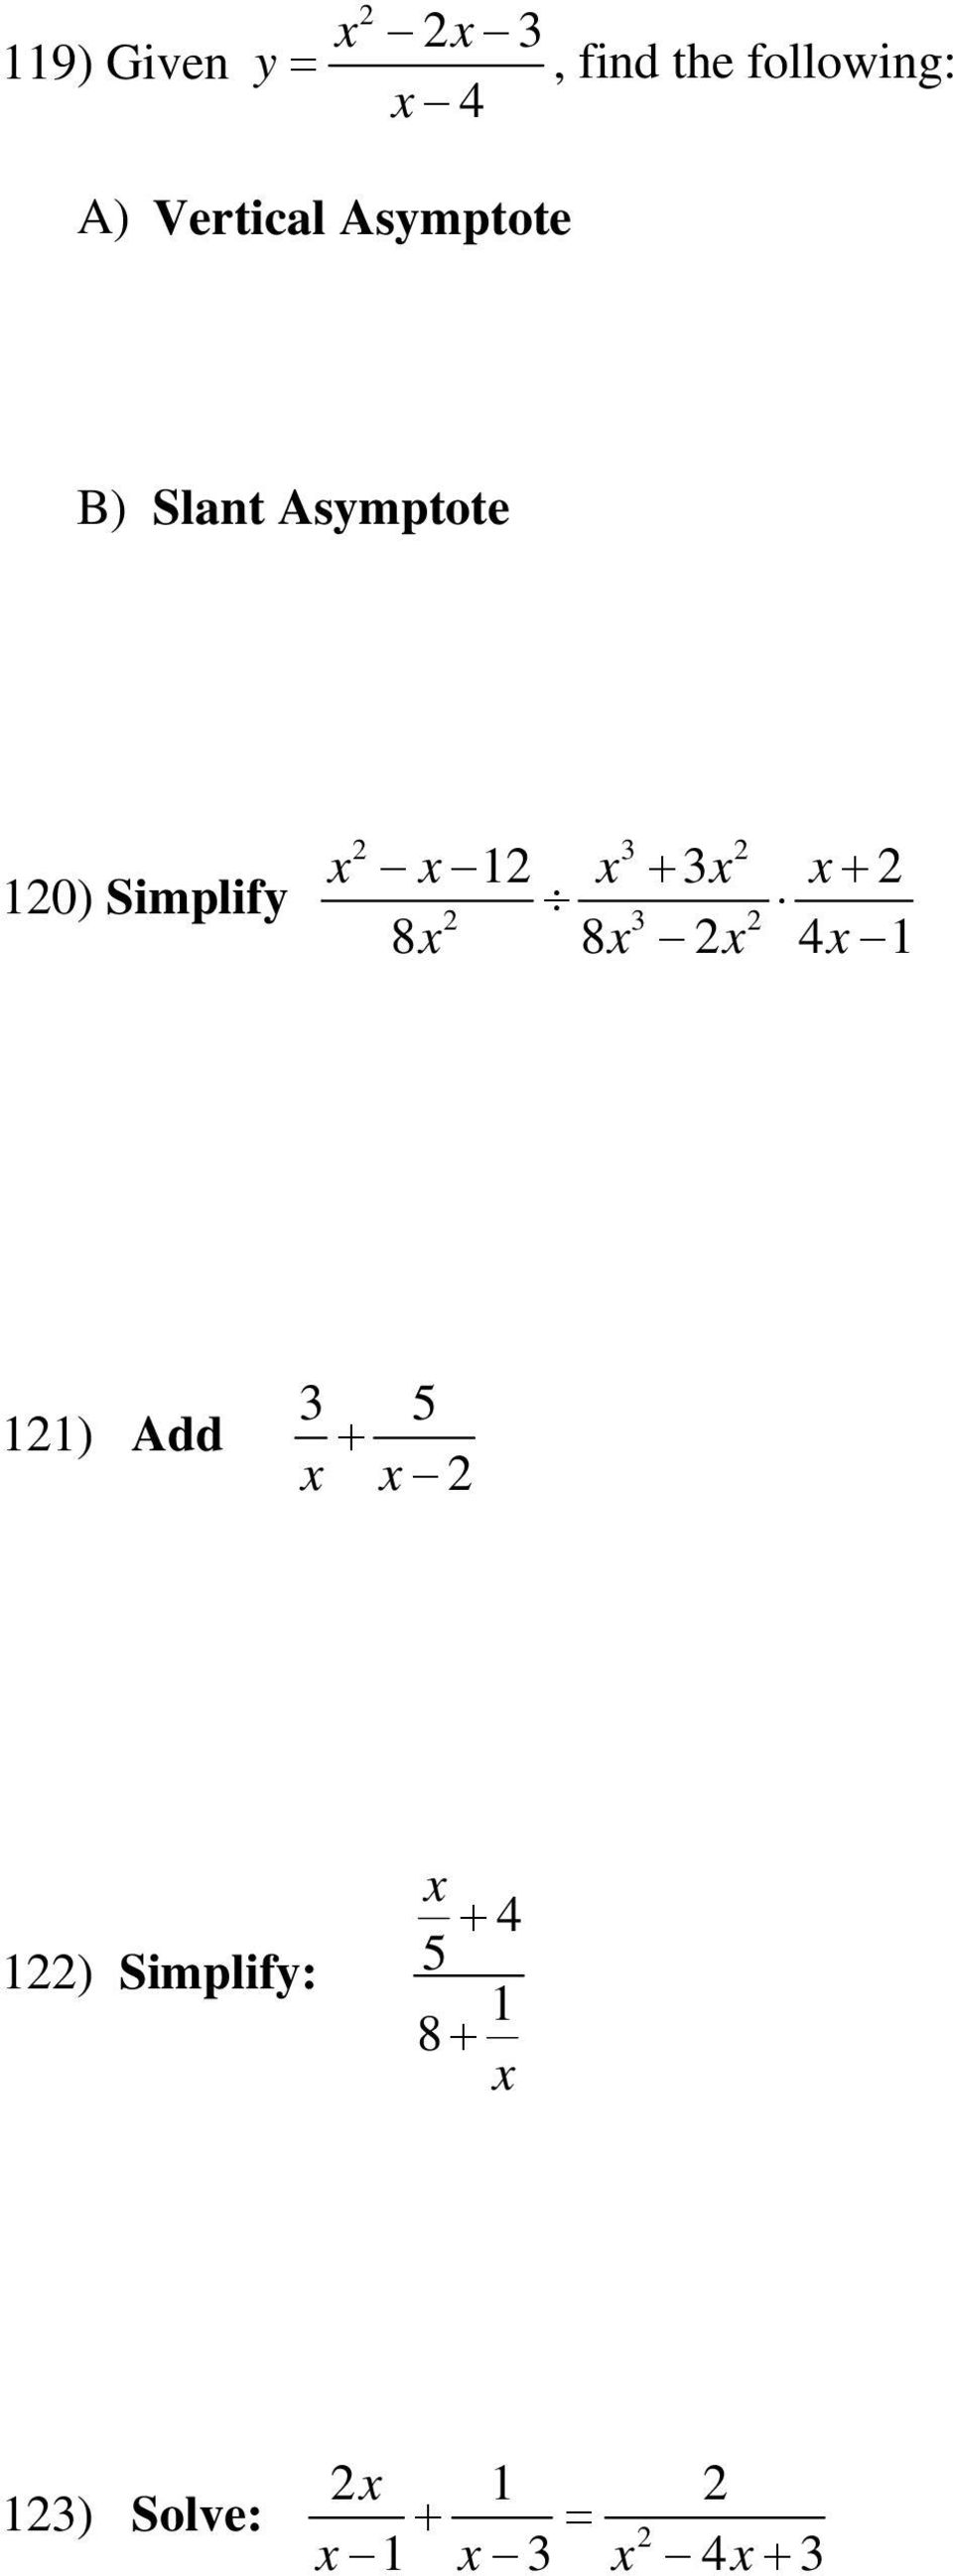 Simplify 3 3 8 8 4 1 + 3 + 1 11) Add 3 5 +